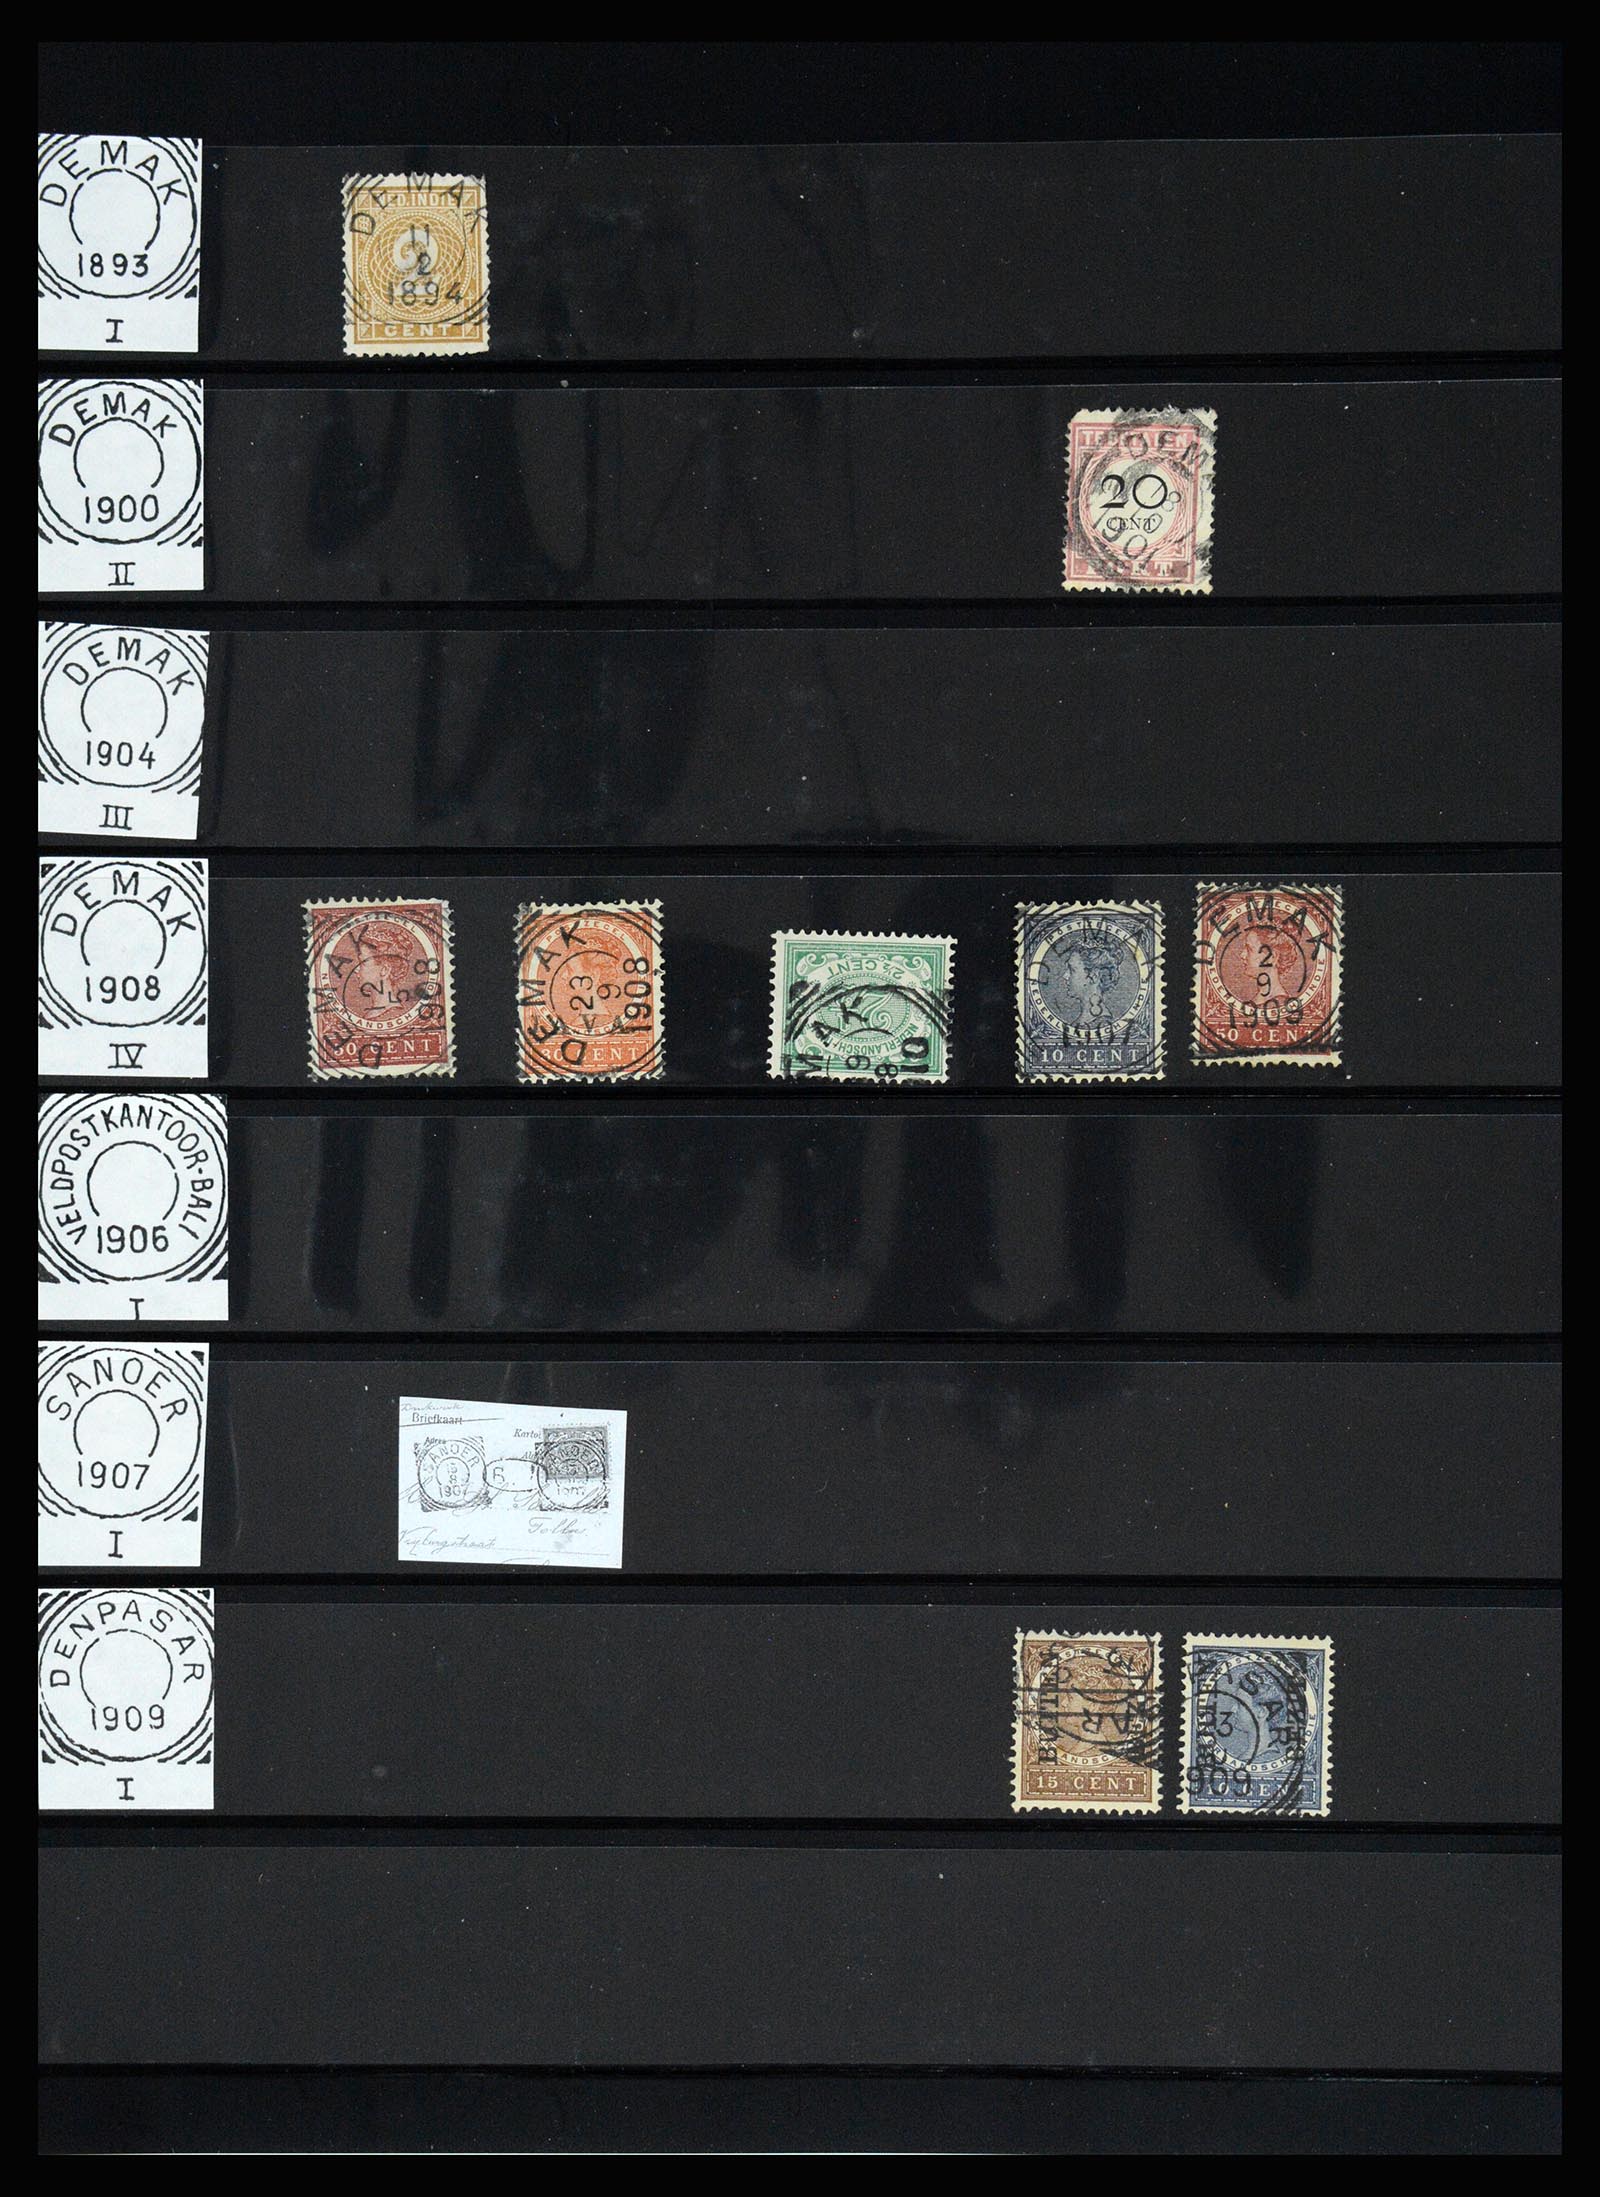 36512 115 - Stamp collection 36512 Nederlands Indië stempels 1872-1930.